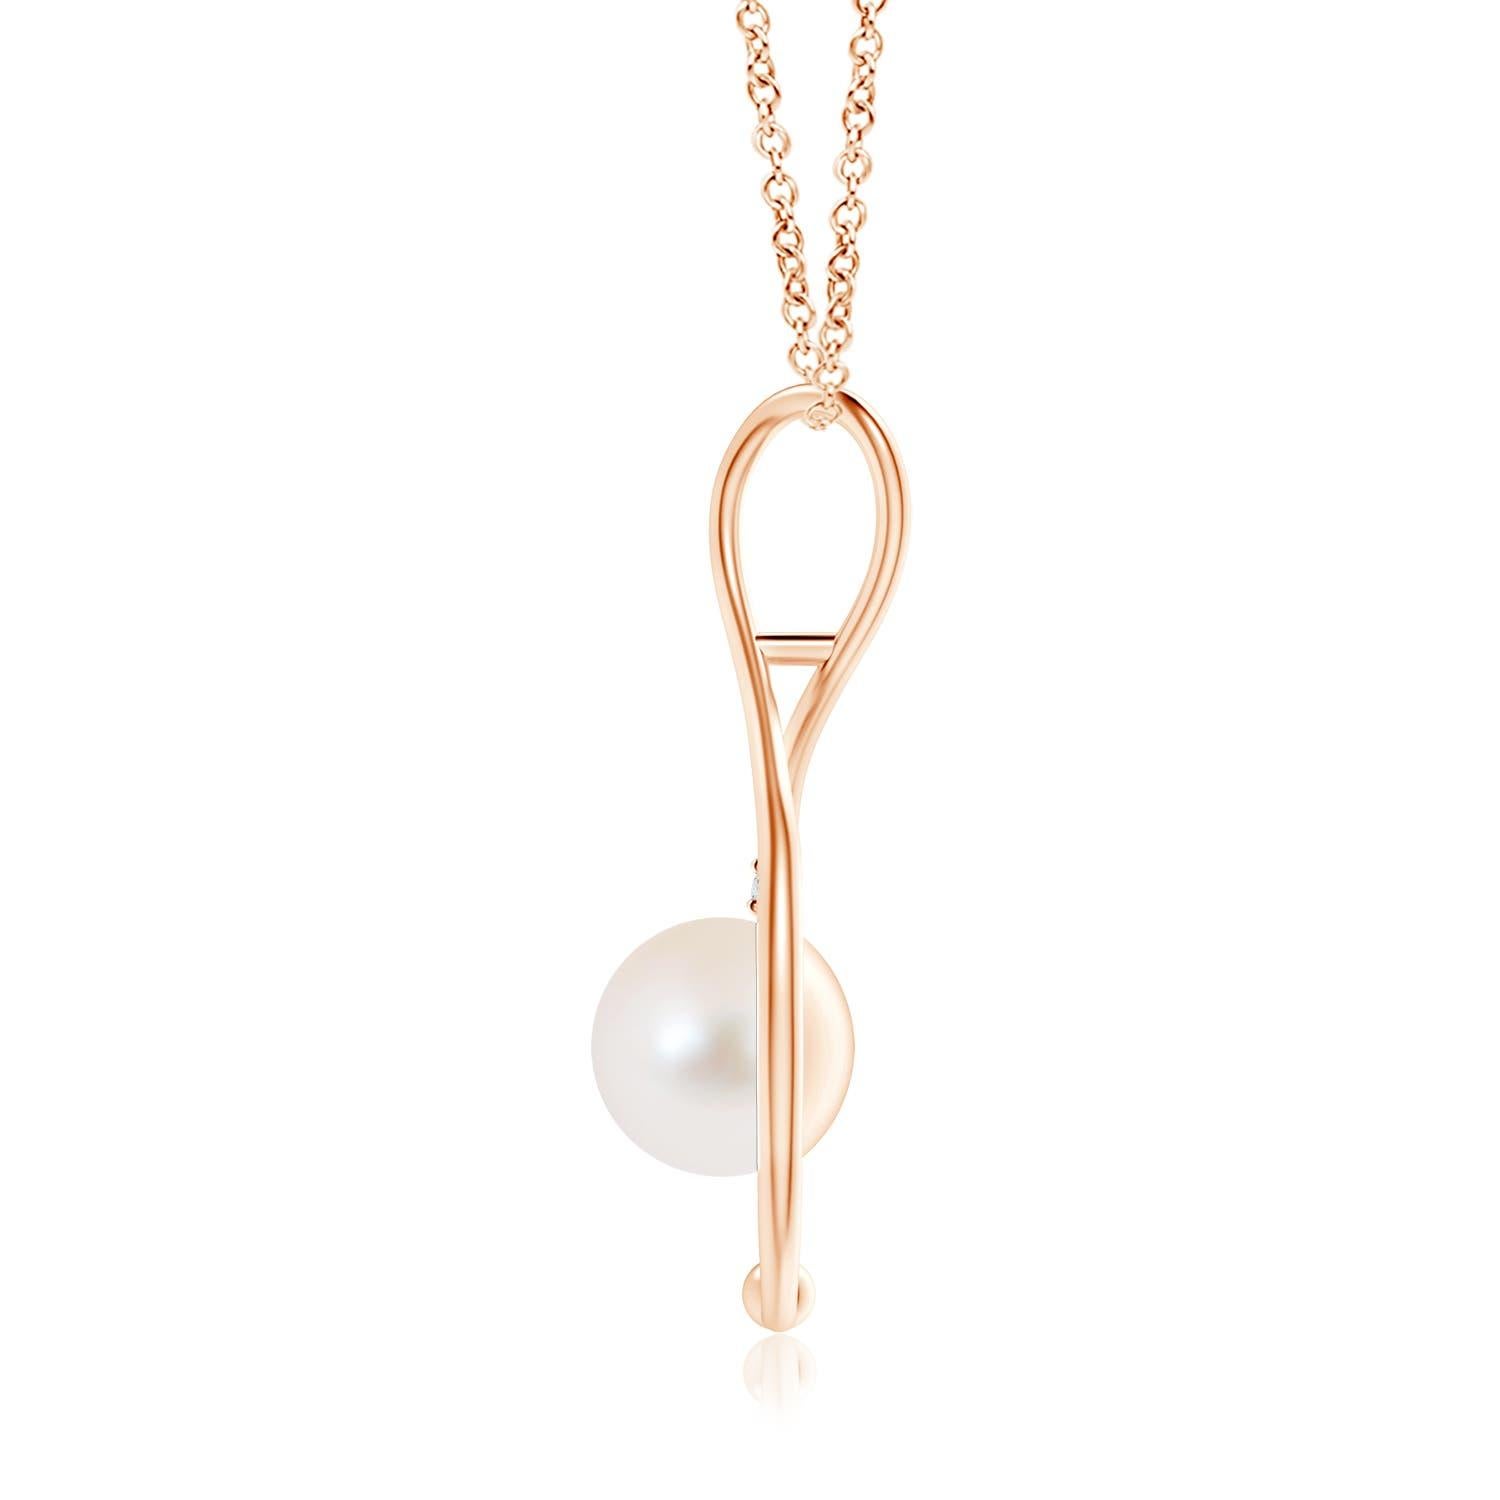 Classique moderne, ce collier infini en perles en or rose 14 carats est une belle interprétation du célèbre symbole de l'infini. La boucle à l'infini câline délicatement la perle de culture d'eau douce ronde pour évoquer un sentiment de tendresse.